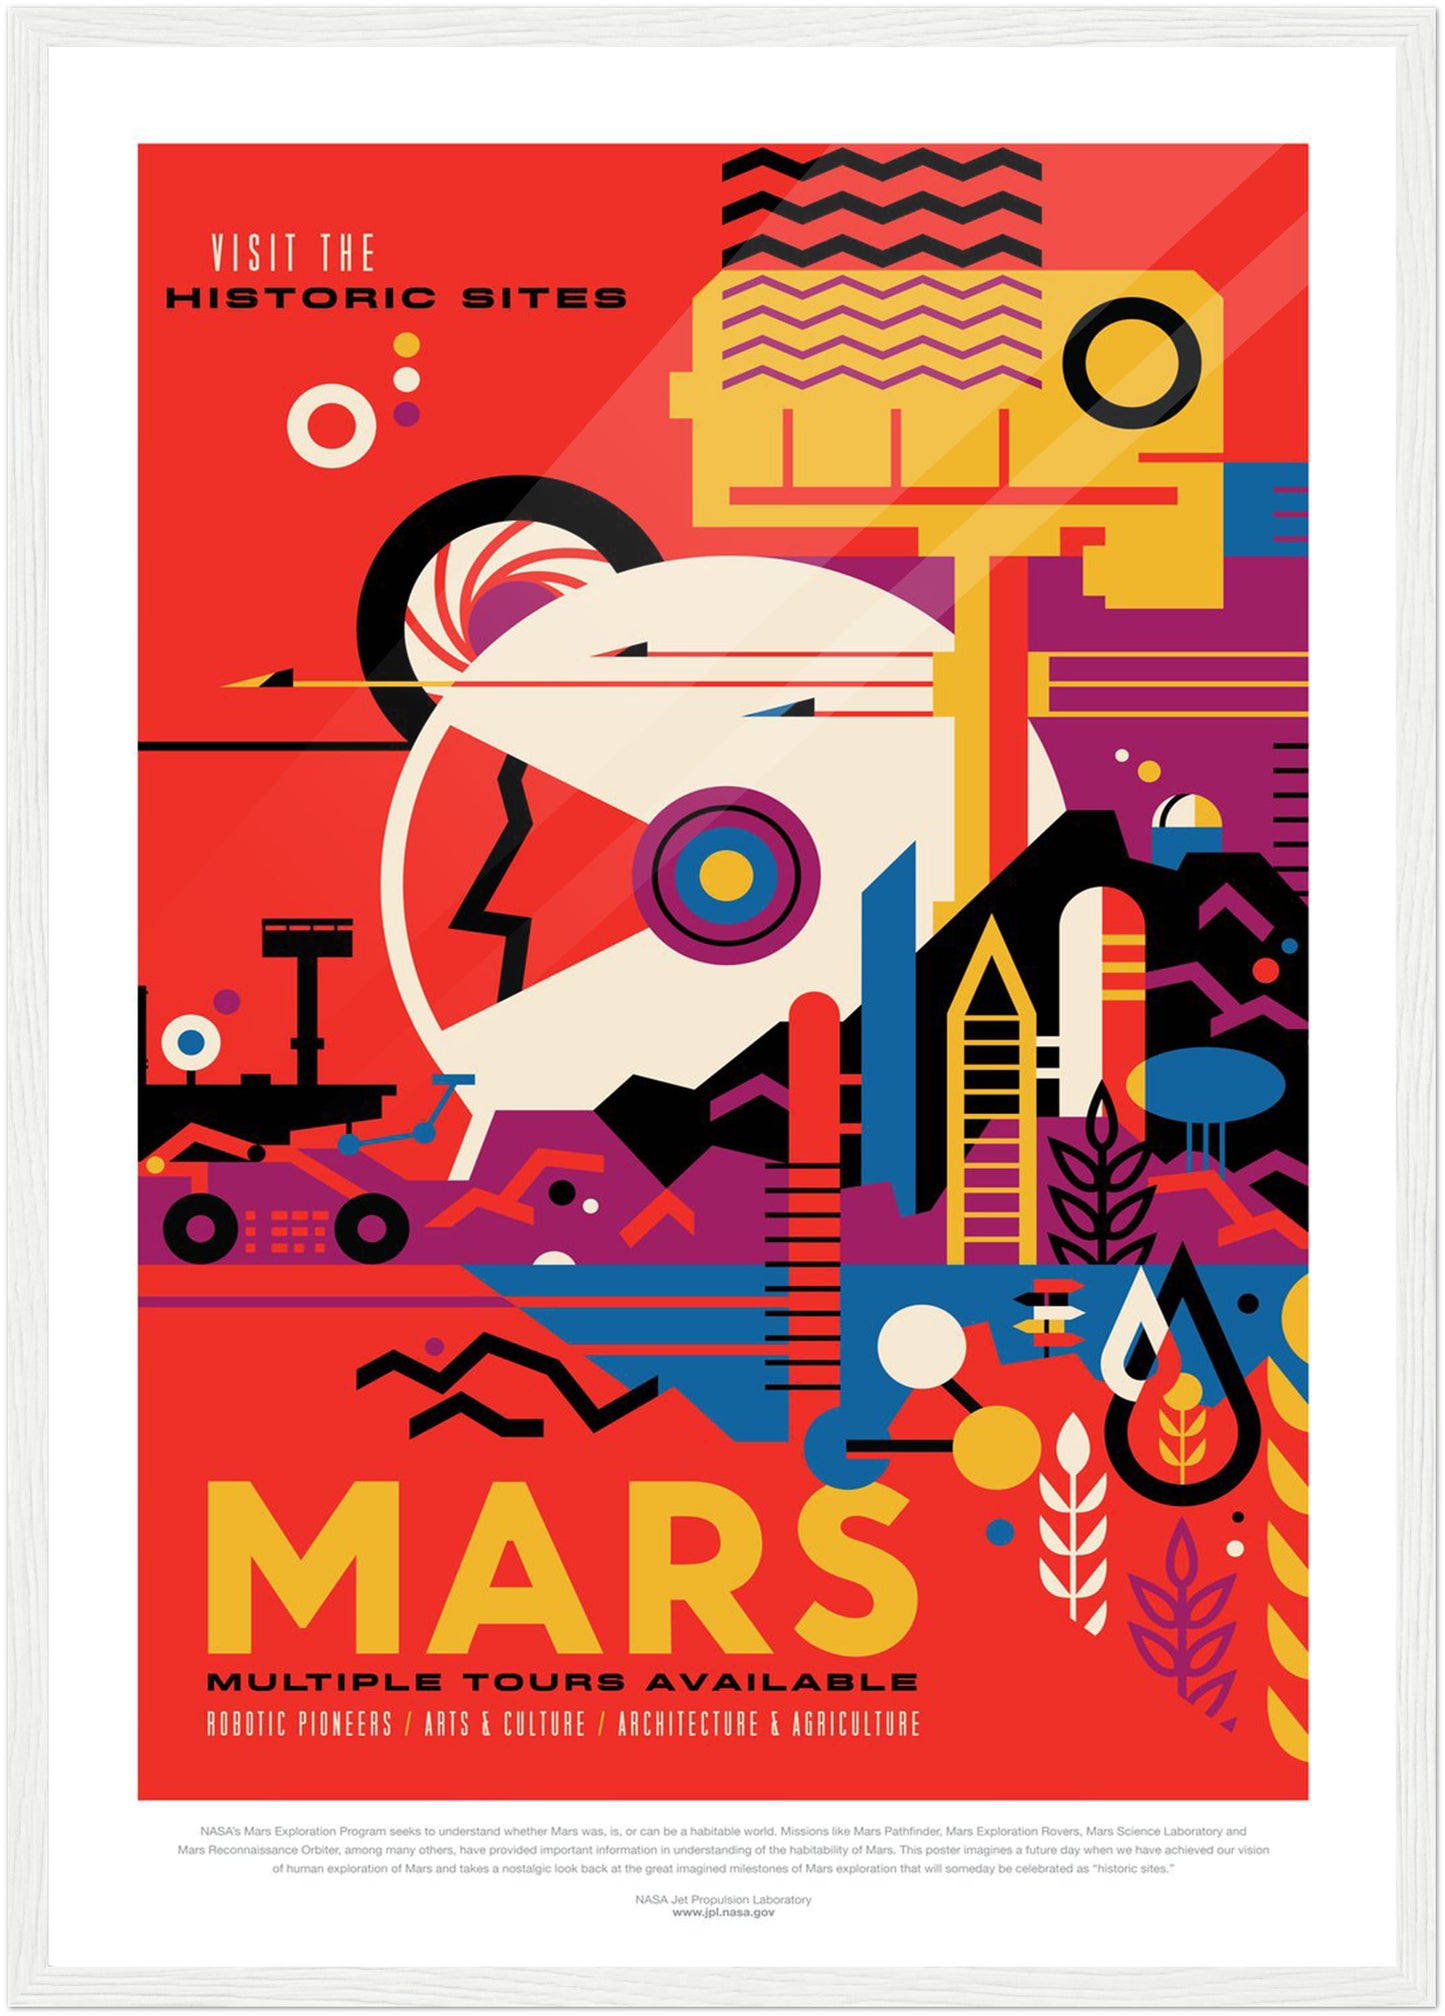 Mars NASA Poster